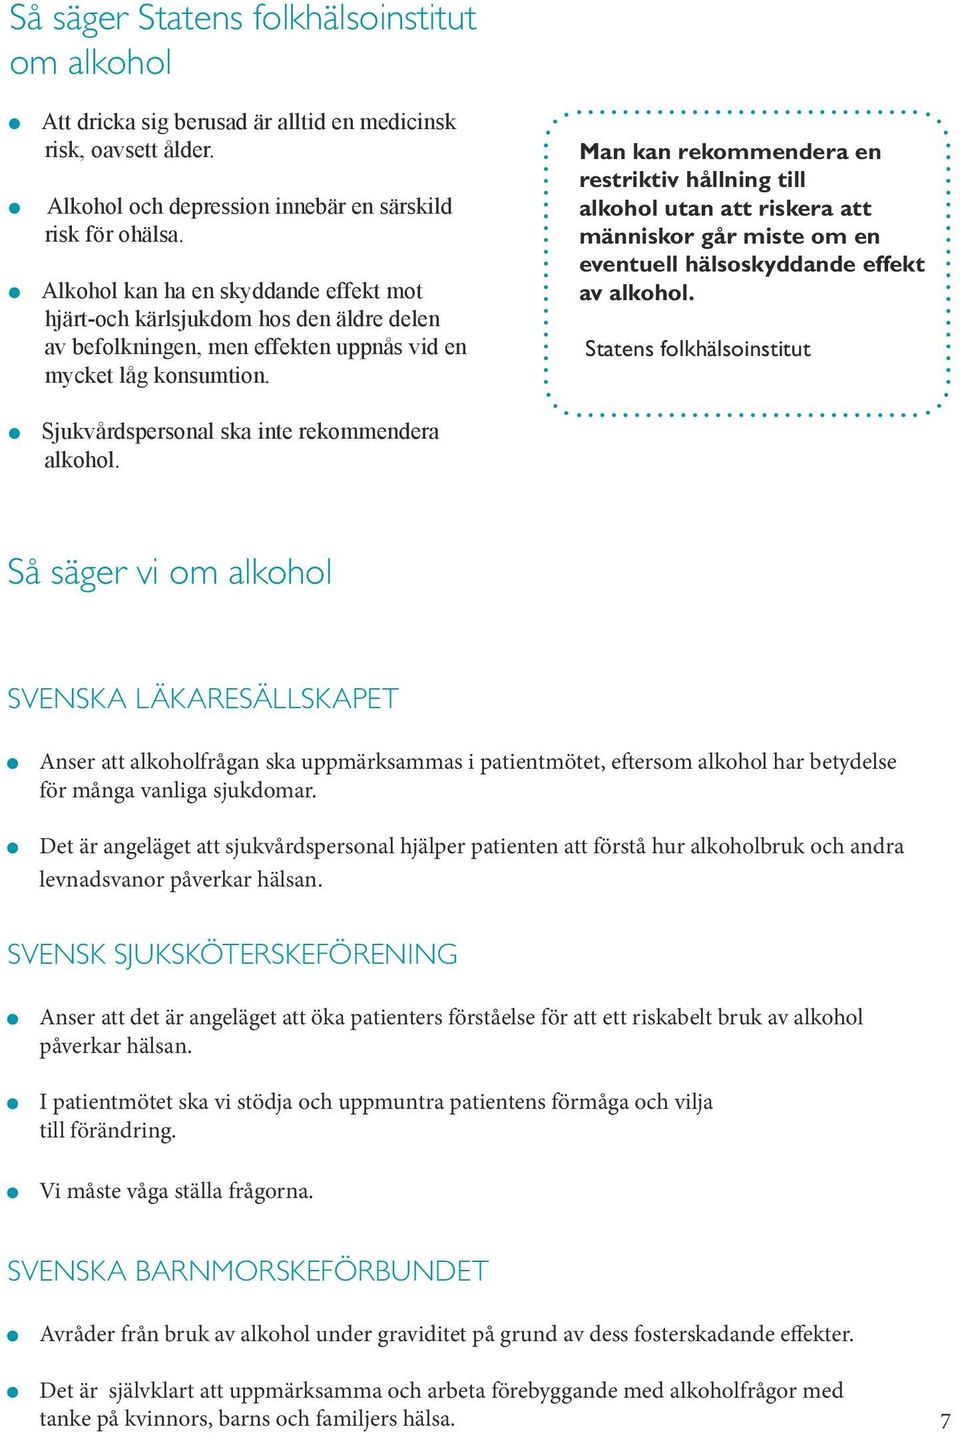 Man kan rekommendera en restriktiv hållning till alkohol utan att riskera att människor går miste om en eventuell hälsoskyddande effekt av alkohol.